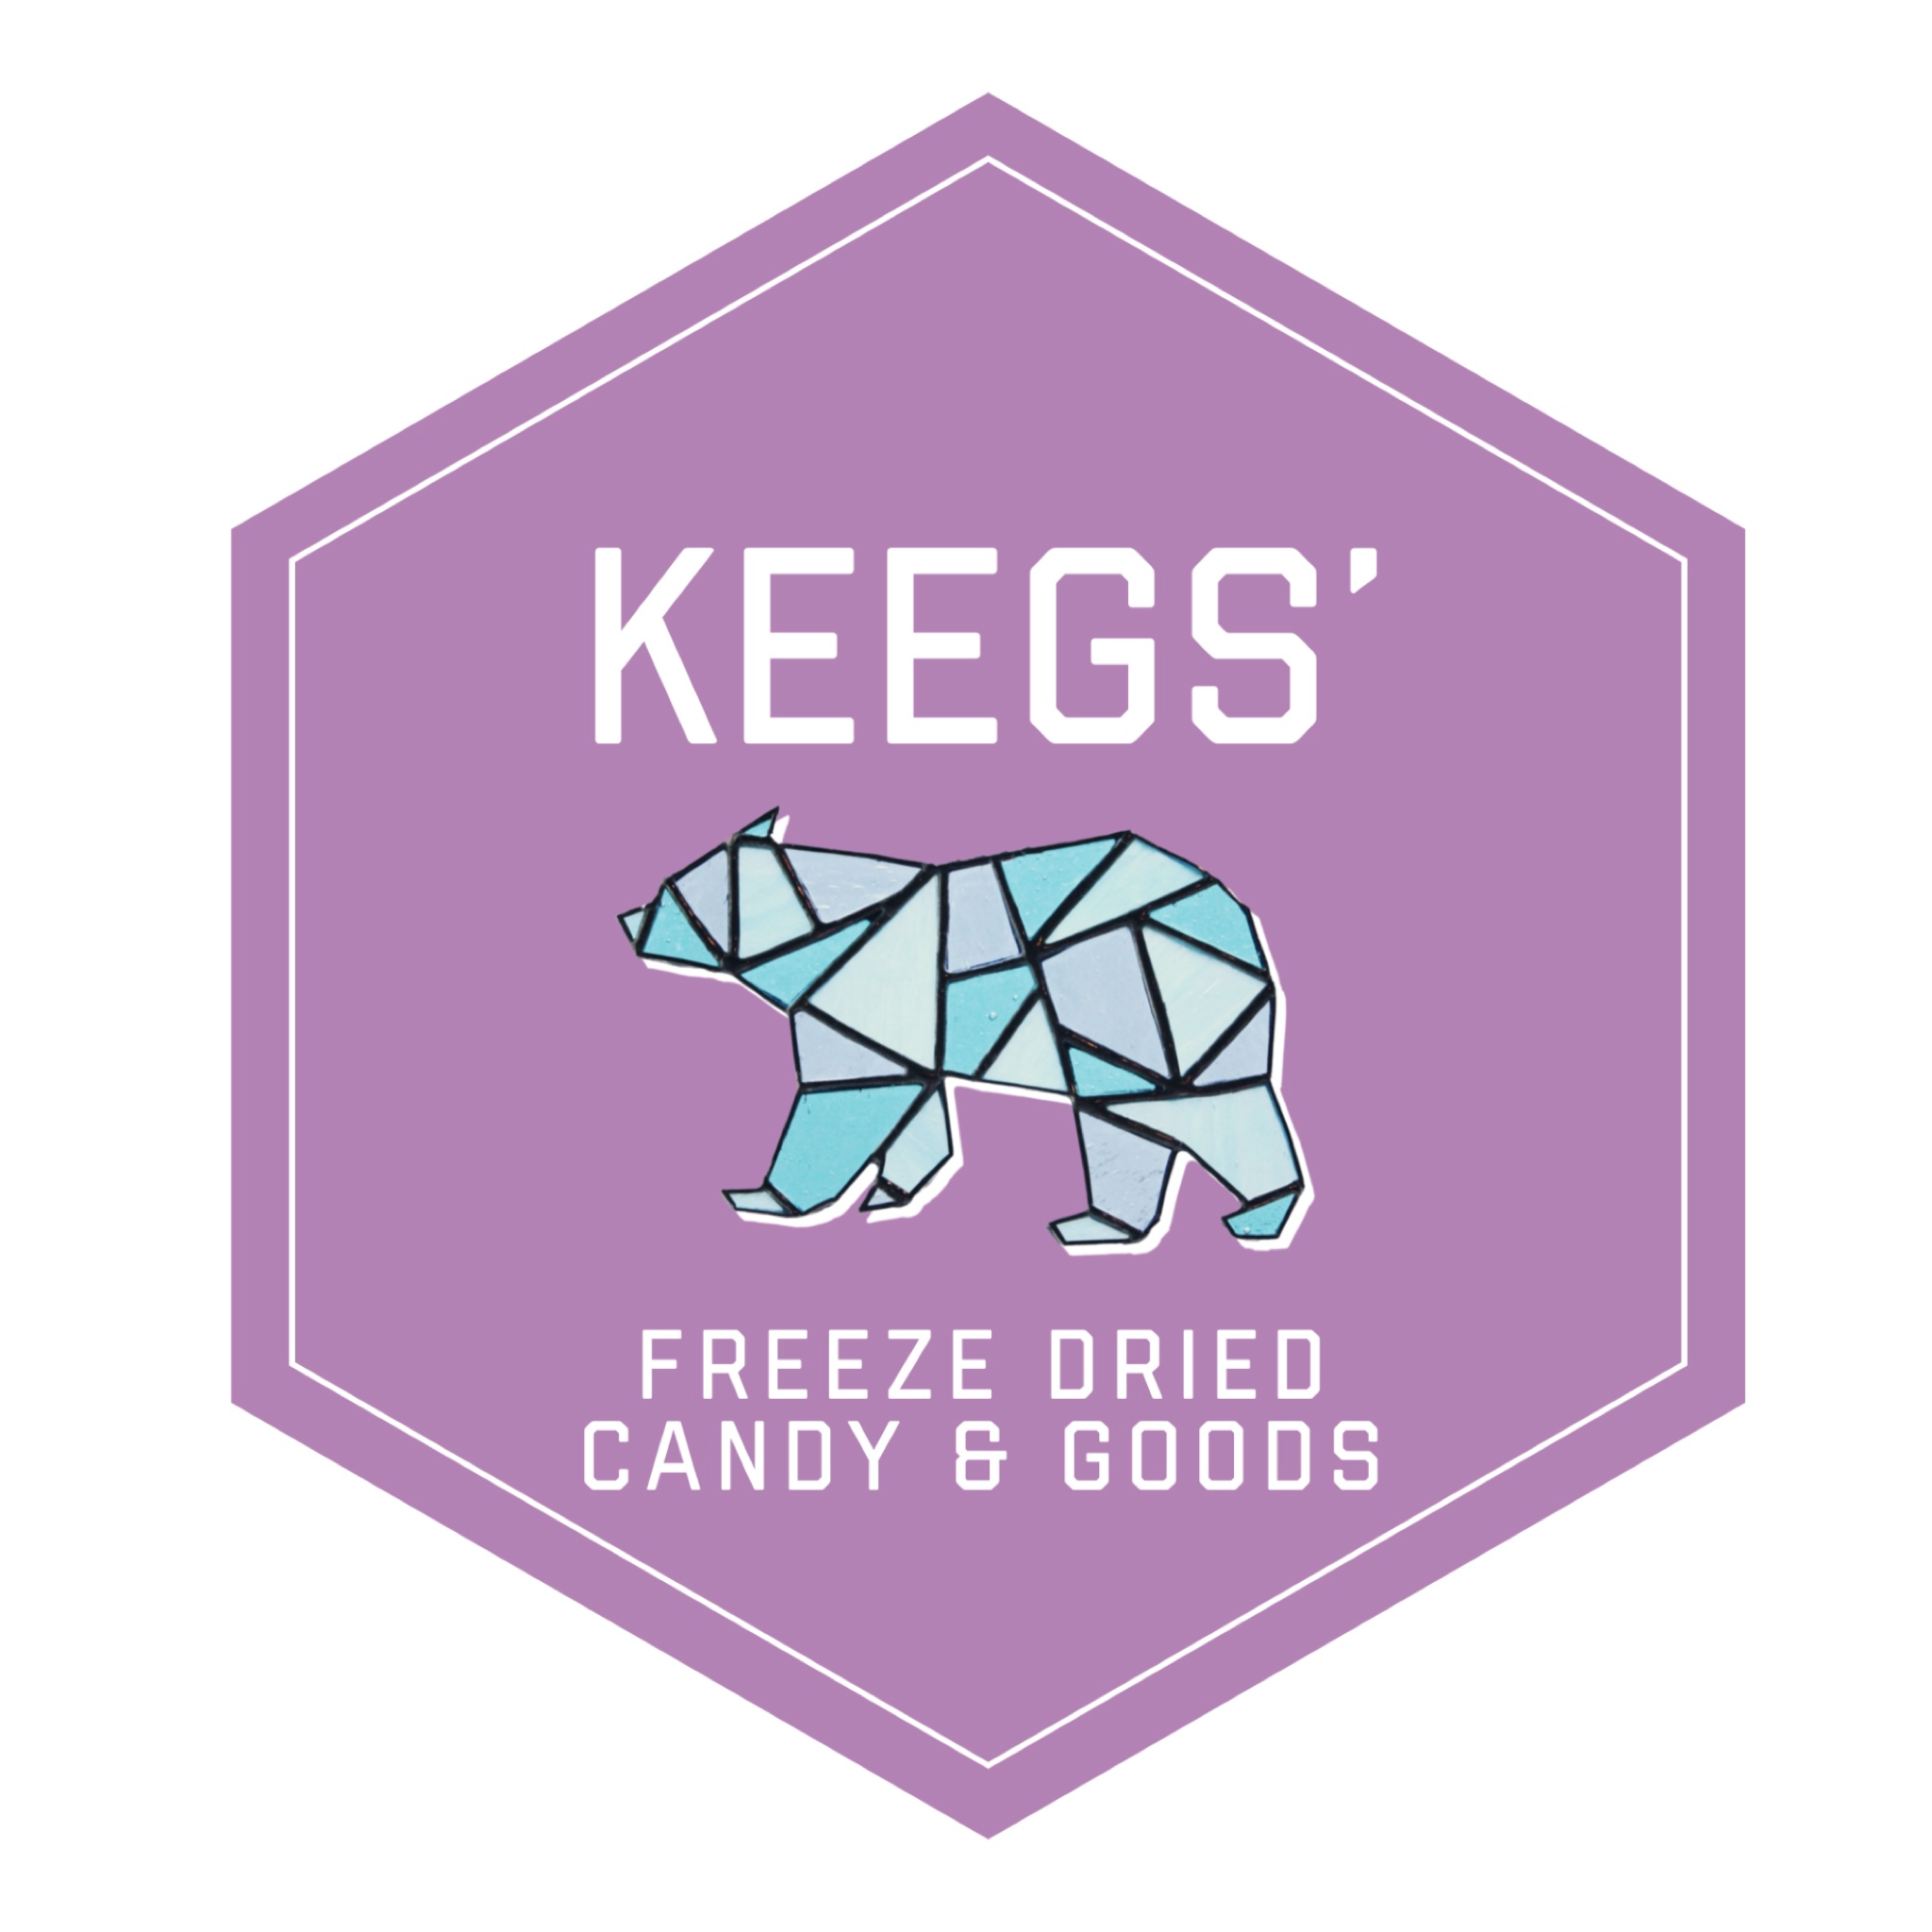 Keegs’ Candy & Goods